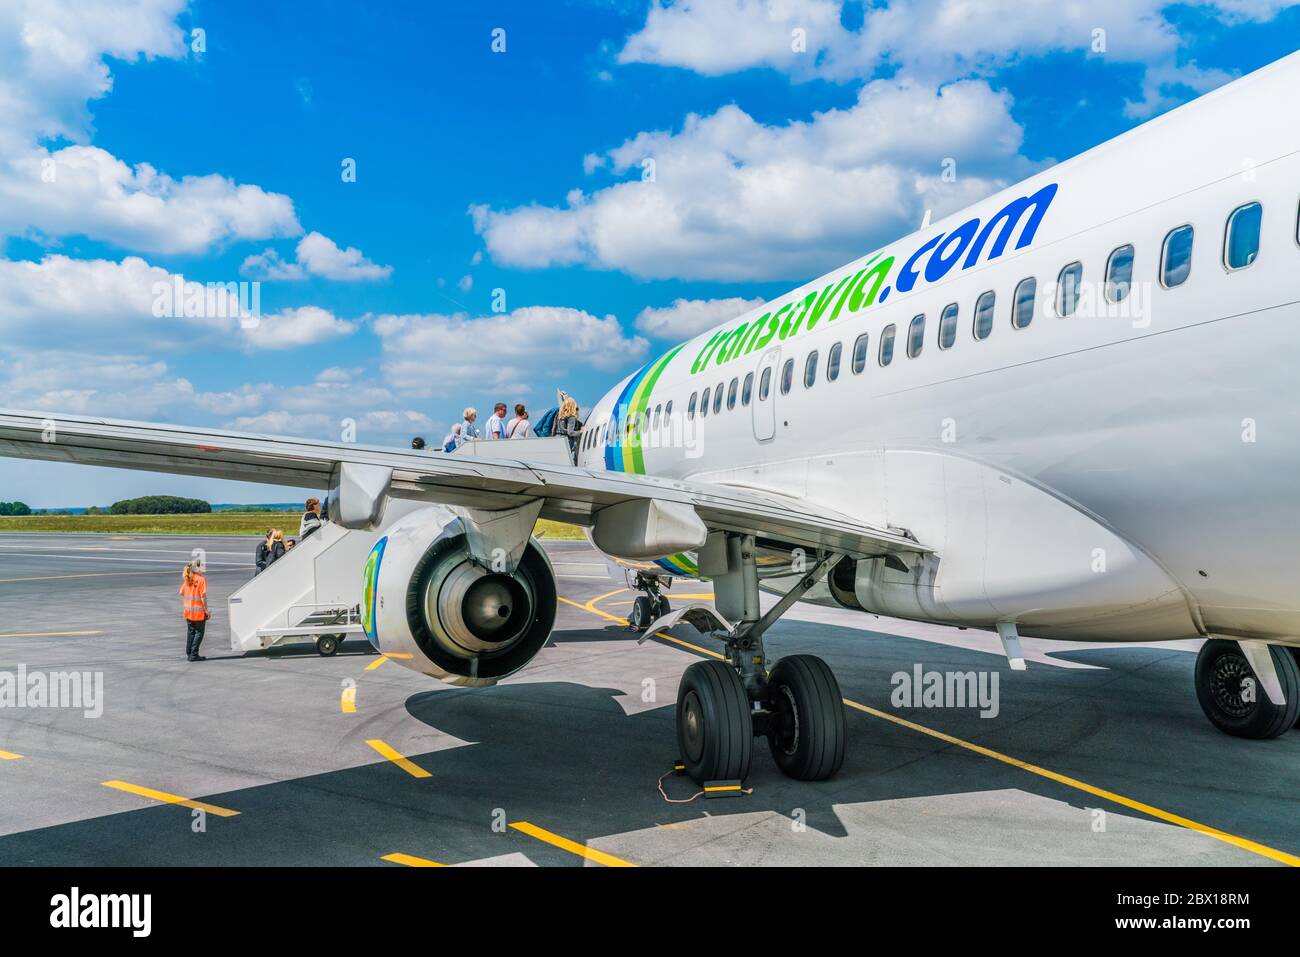 Bergerac, France, May 8, 2017: passengers boarding Transavia Boeing 737-700 flight at Bergerac airport Stock Photo